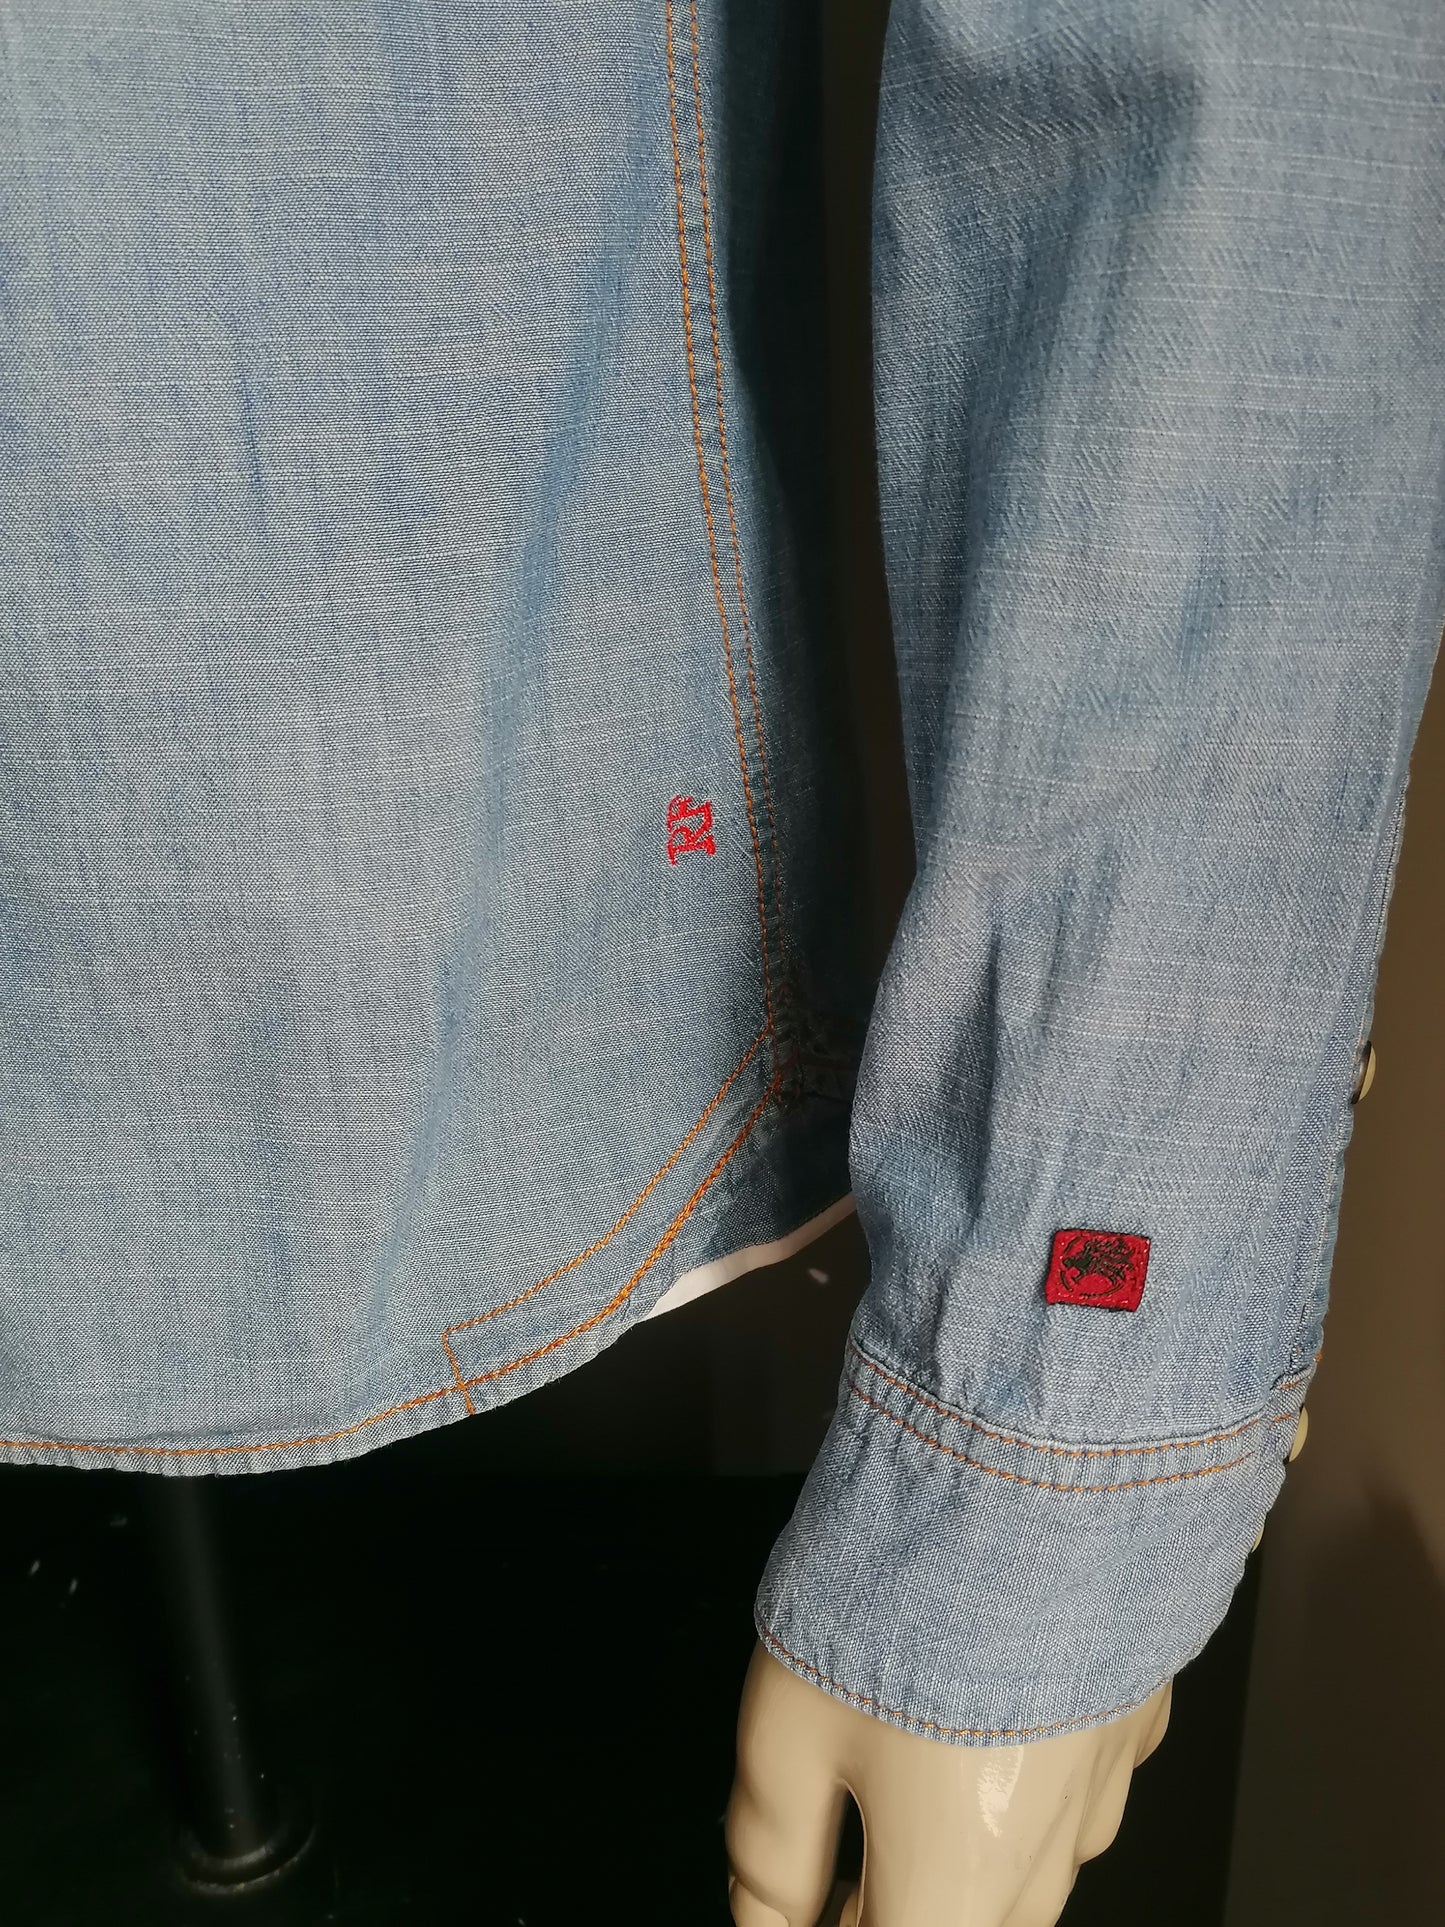 Jeans / Jeans -Hemd nachfüllen mit Pressebutter. Blau gefärbt. Größe L.